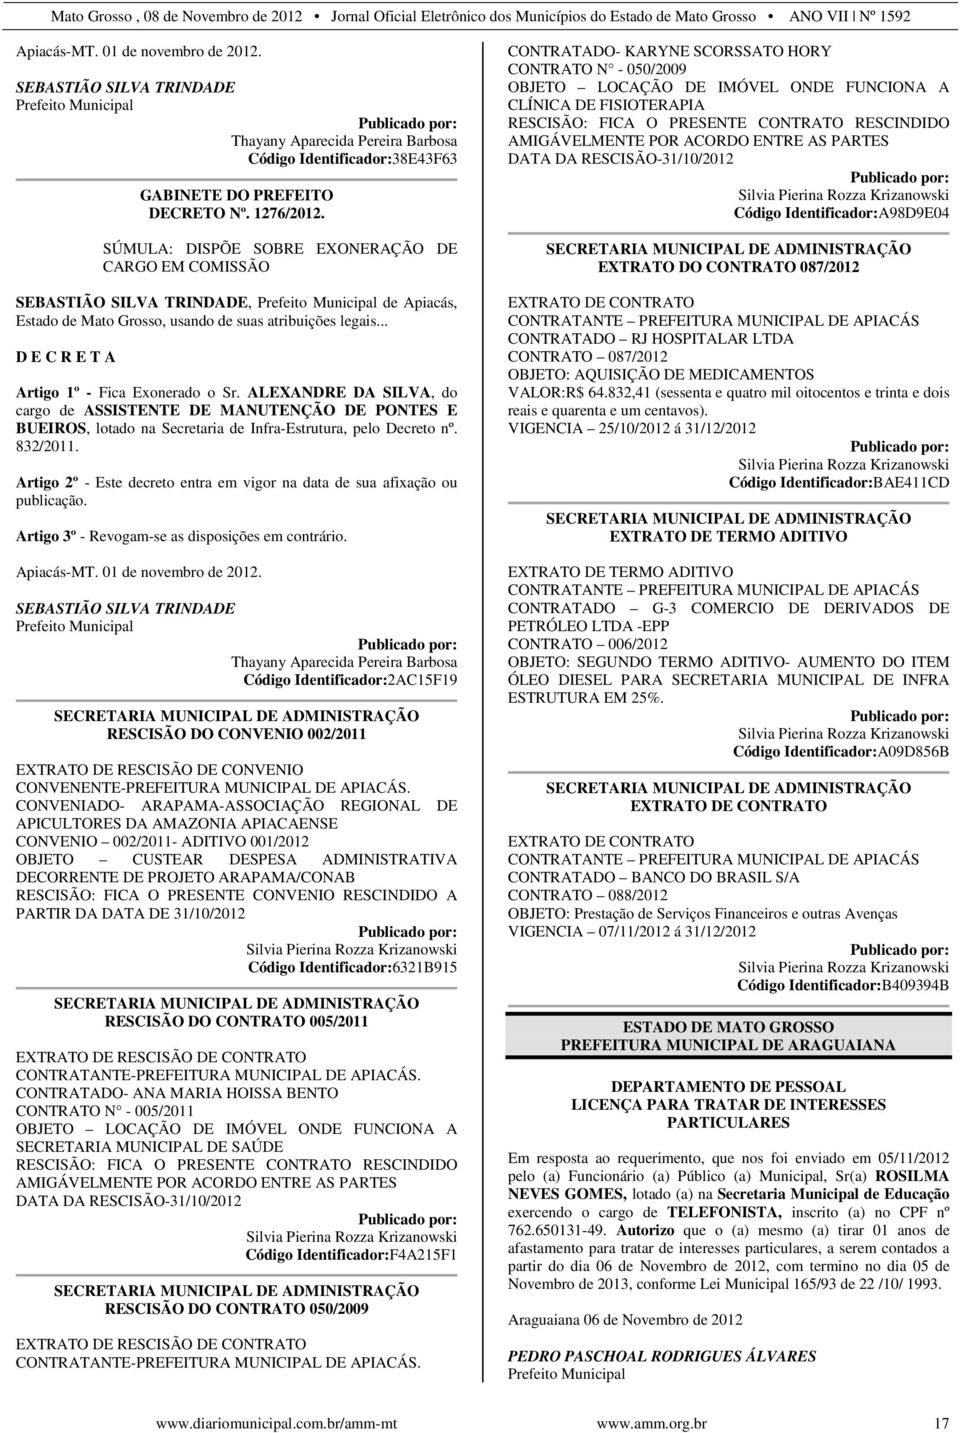 ALEXANDRE DA SILVA, do cargo de ASSISTENTE DE MANUTENÇÃO DE PONTES E BUEIROS, lotado na Secretaria de Infra-Estrutura, pelo Decreto nº. 832/2011.